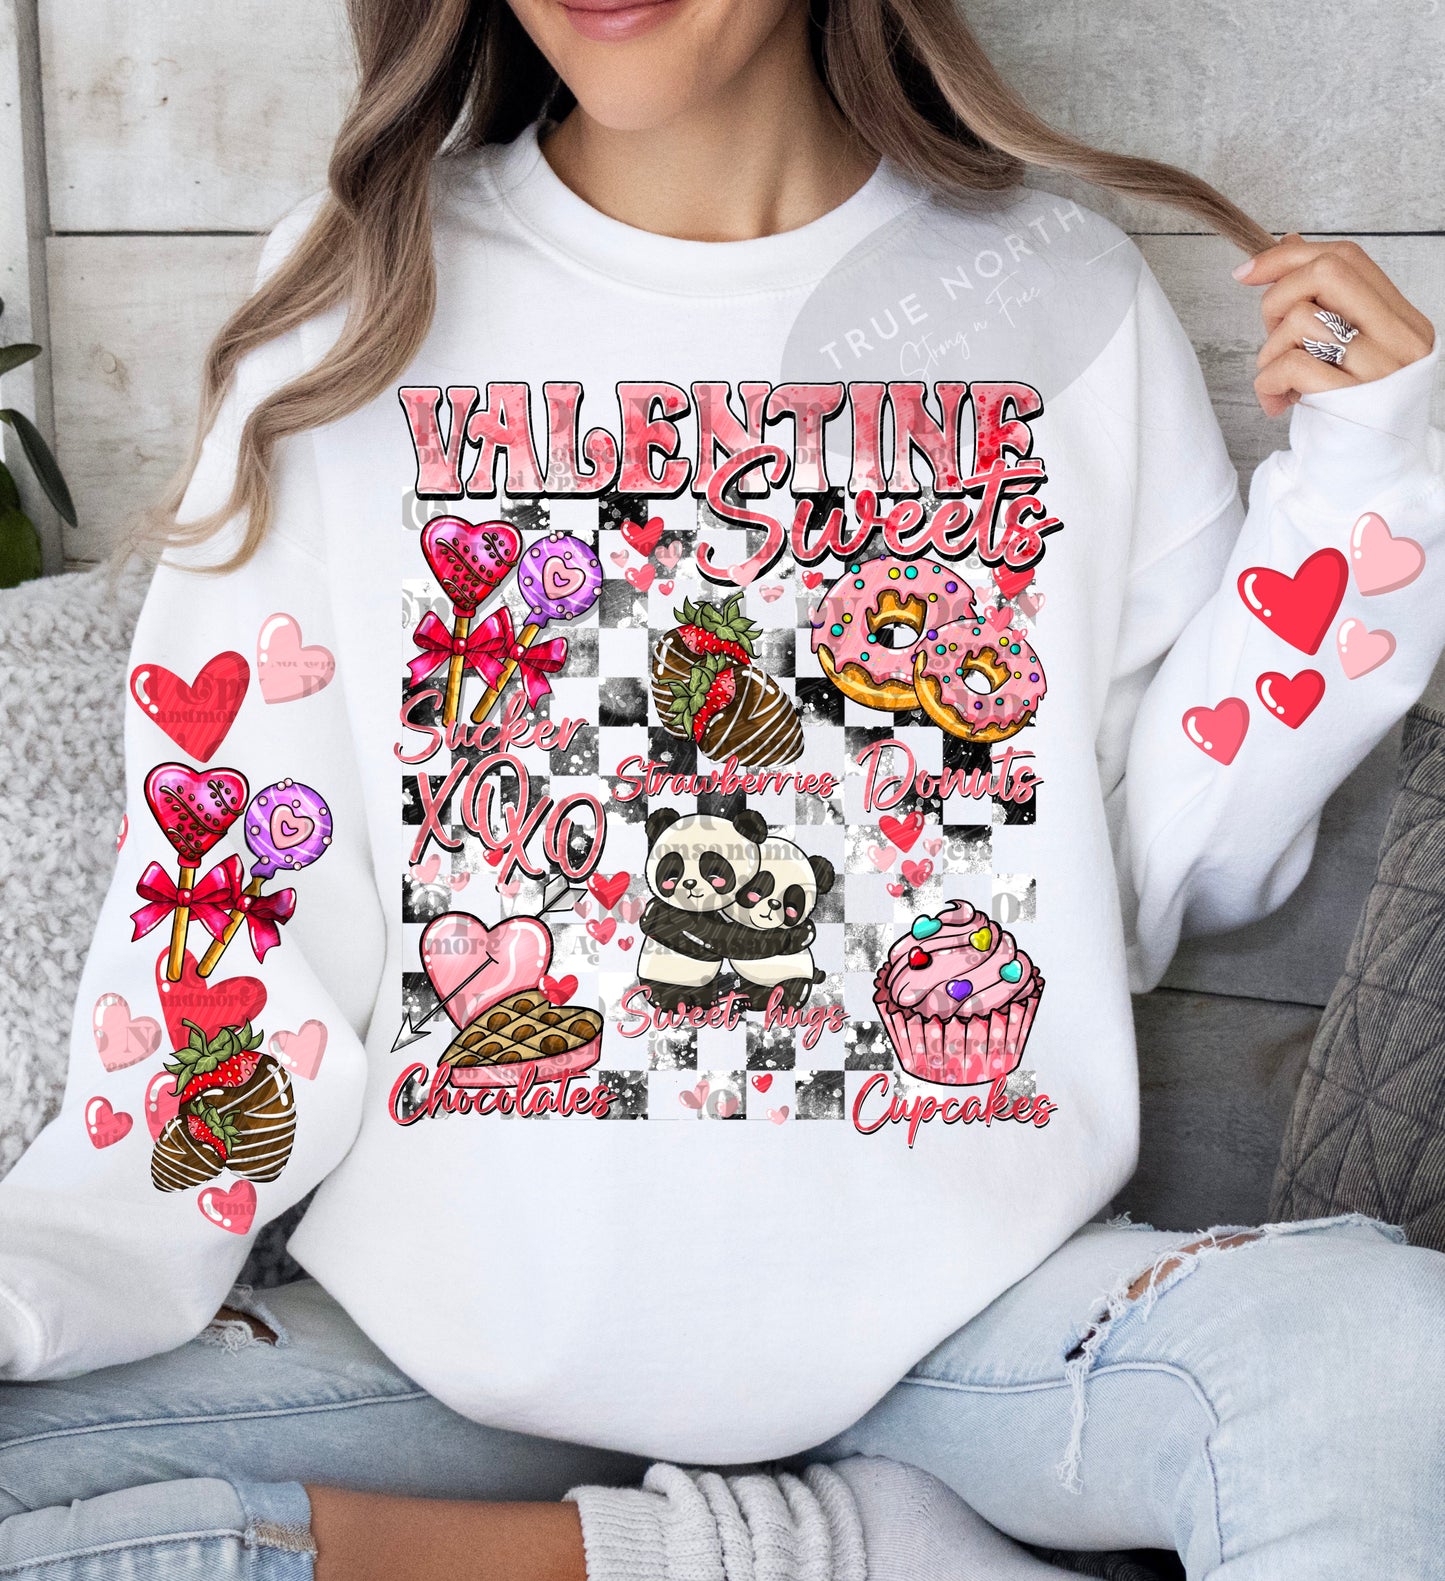 Valentines Sweet Sleeved Prints Sweatshirt or T-Shirt Offerings